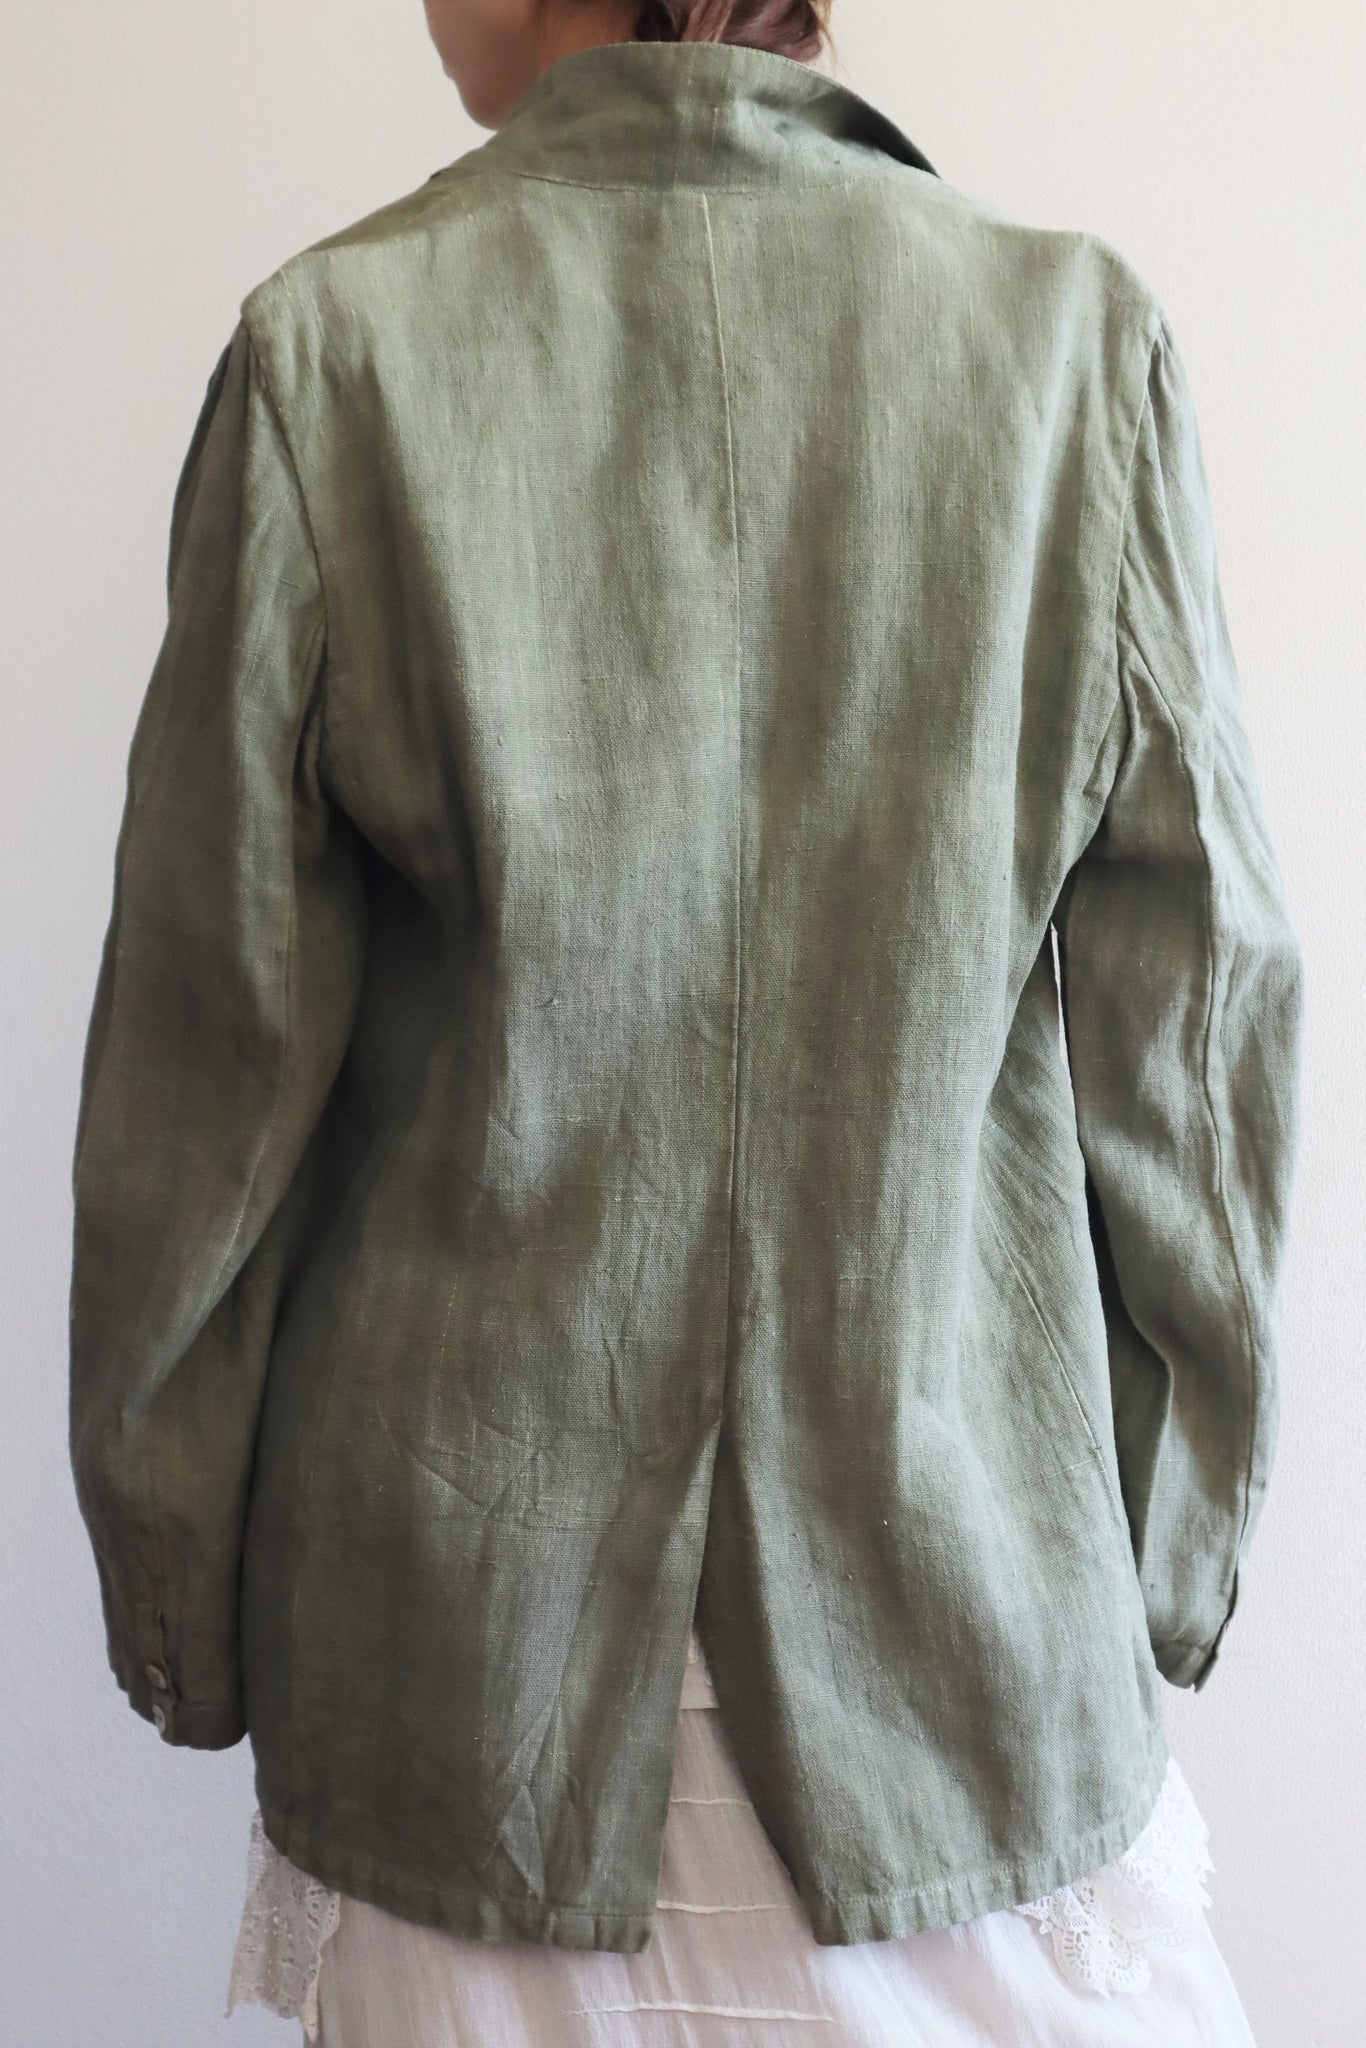 80s Khaki Linen Jacket